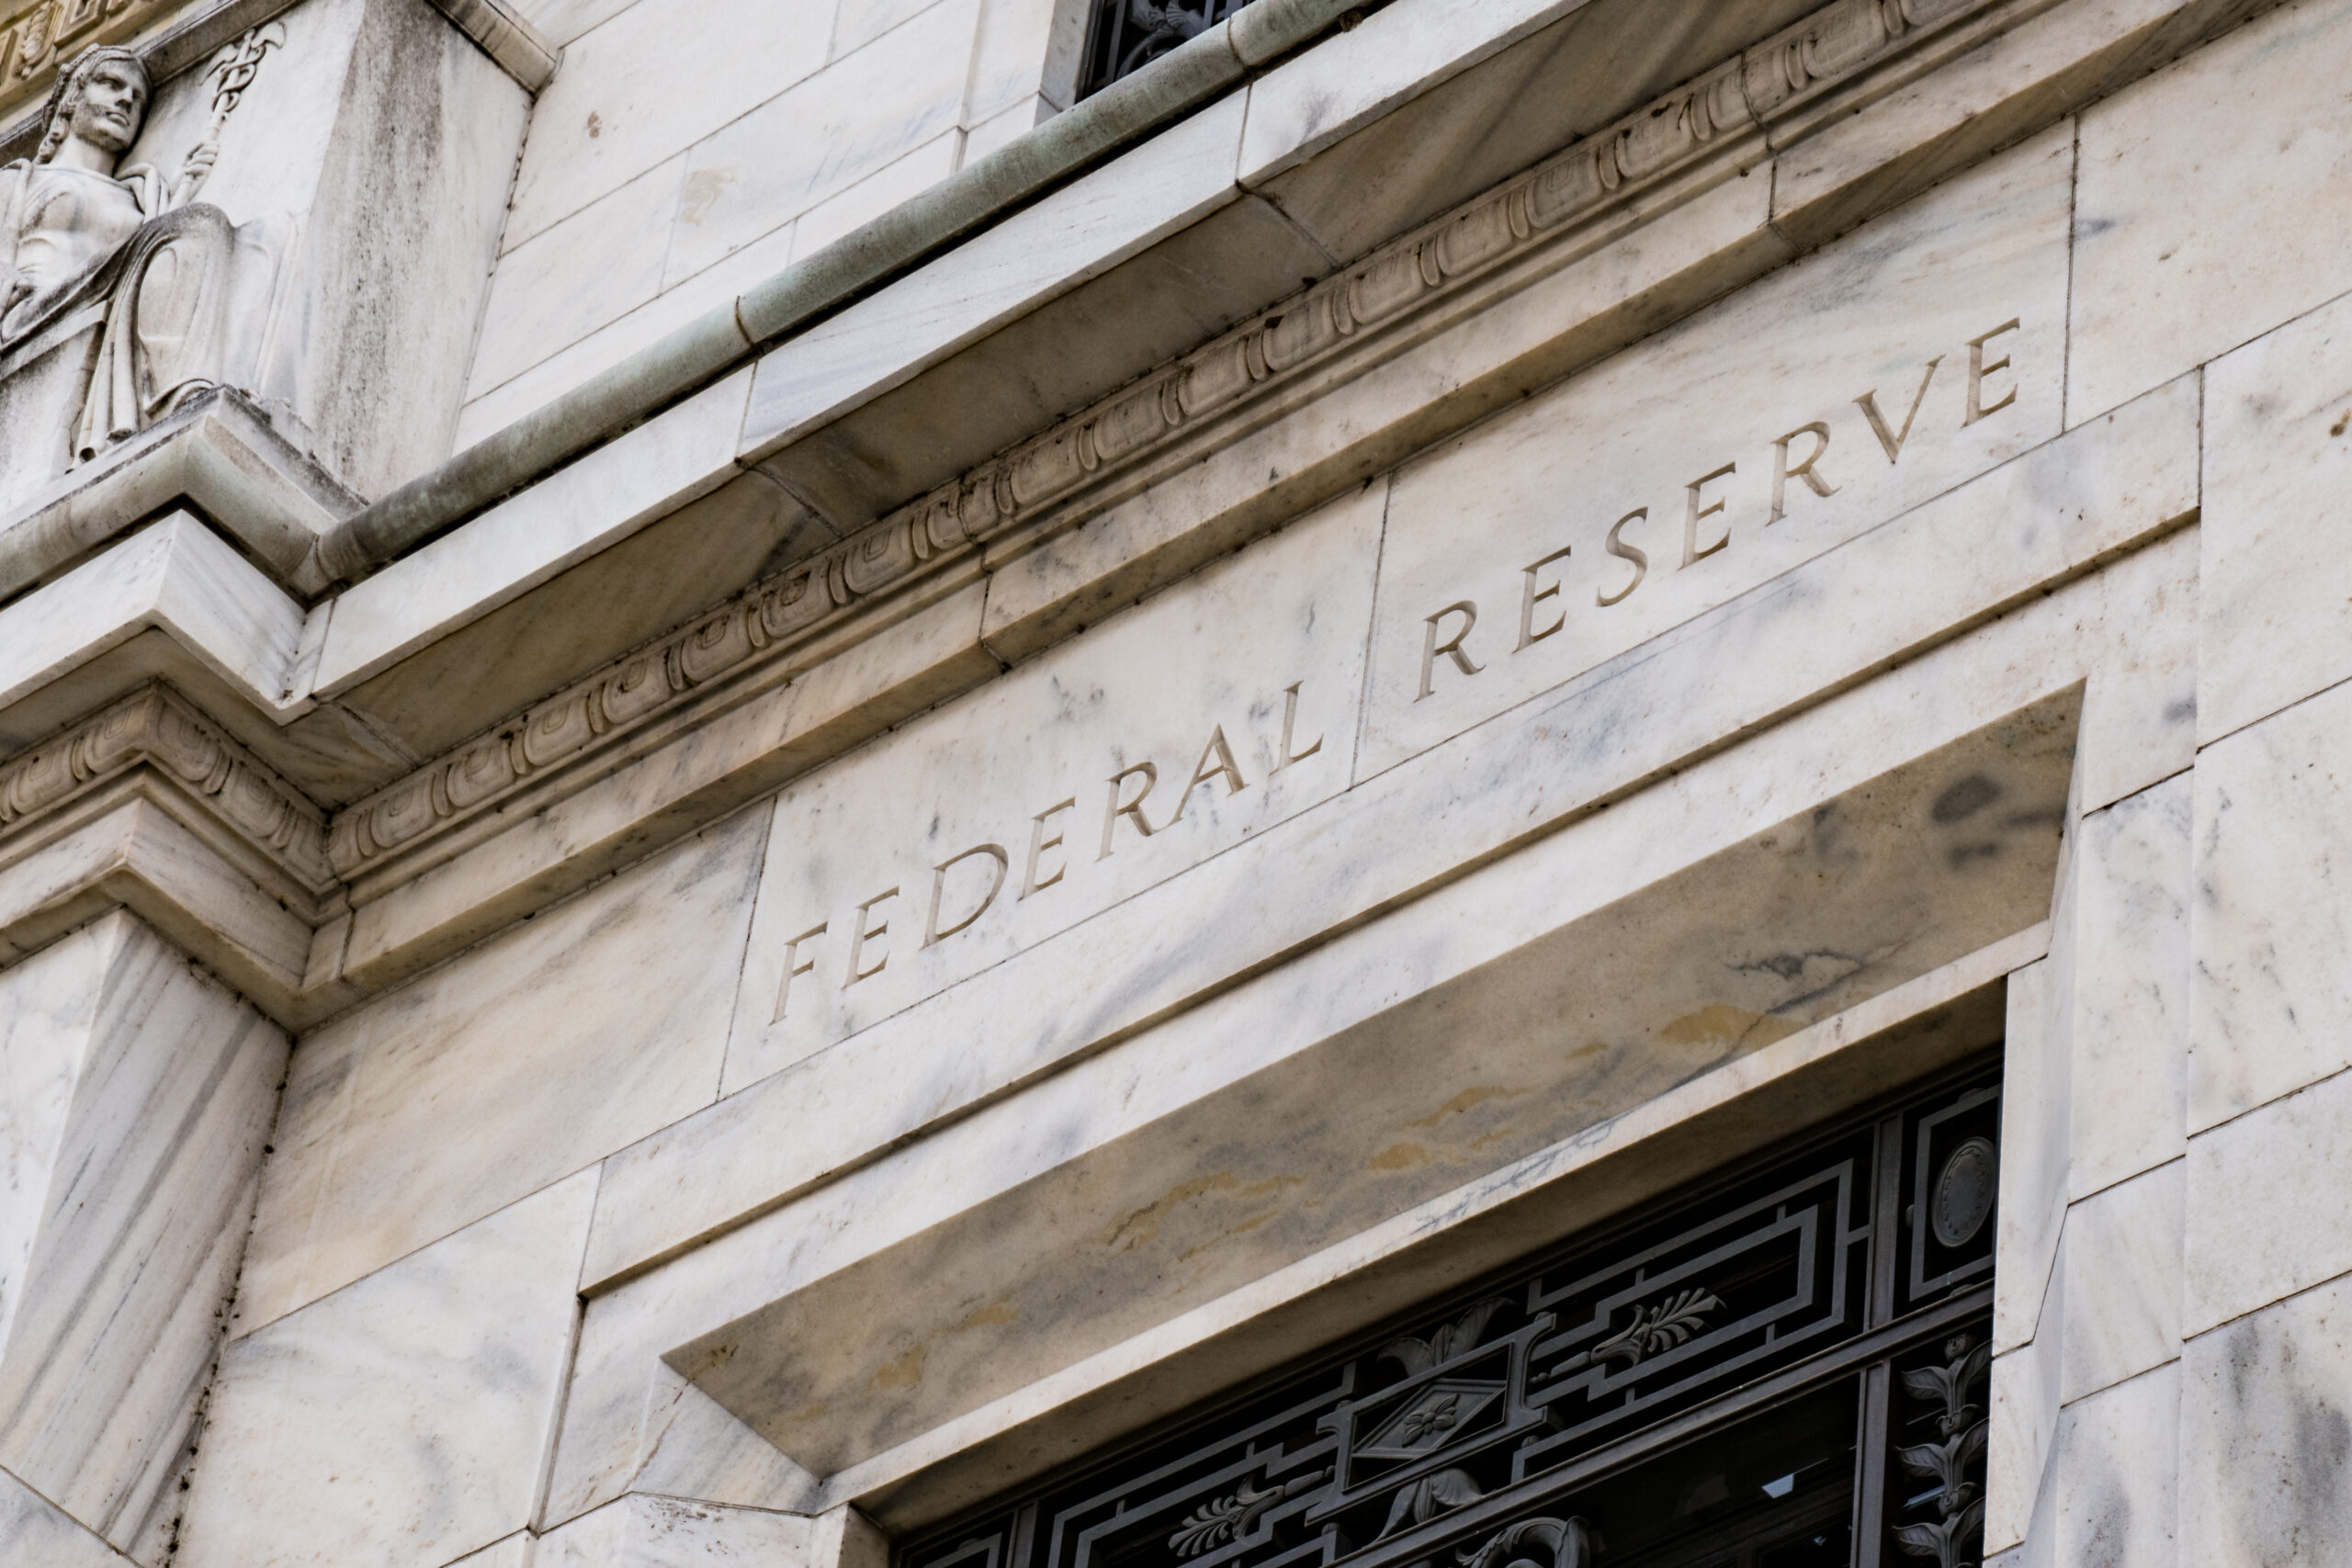 La Fed alza i tassi di un quarto di punto. Powell: “ridurremo la dimensione del nostro bilancio”